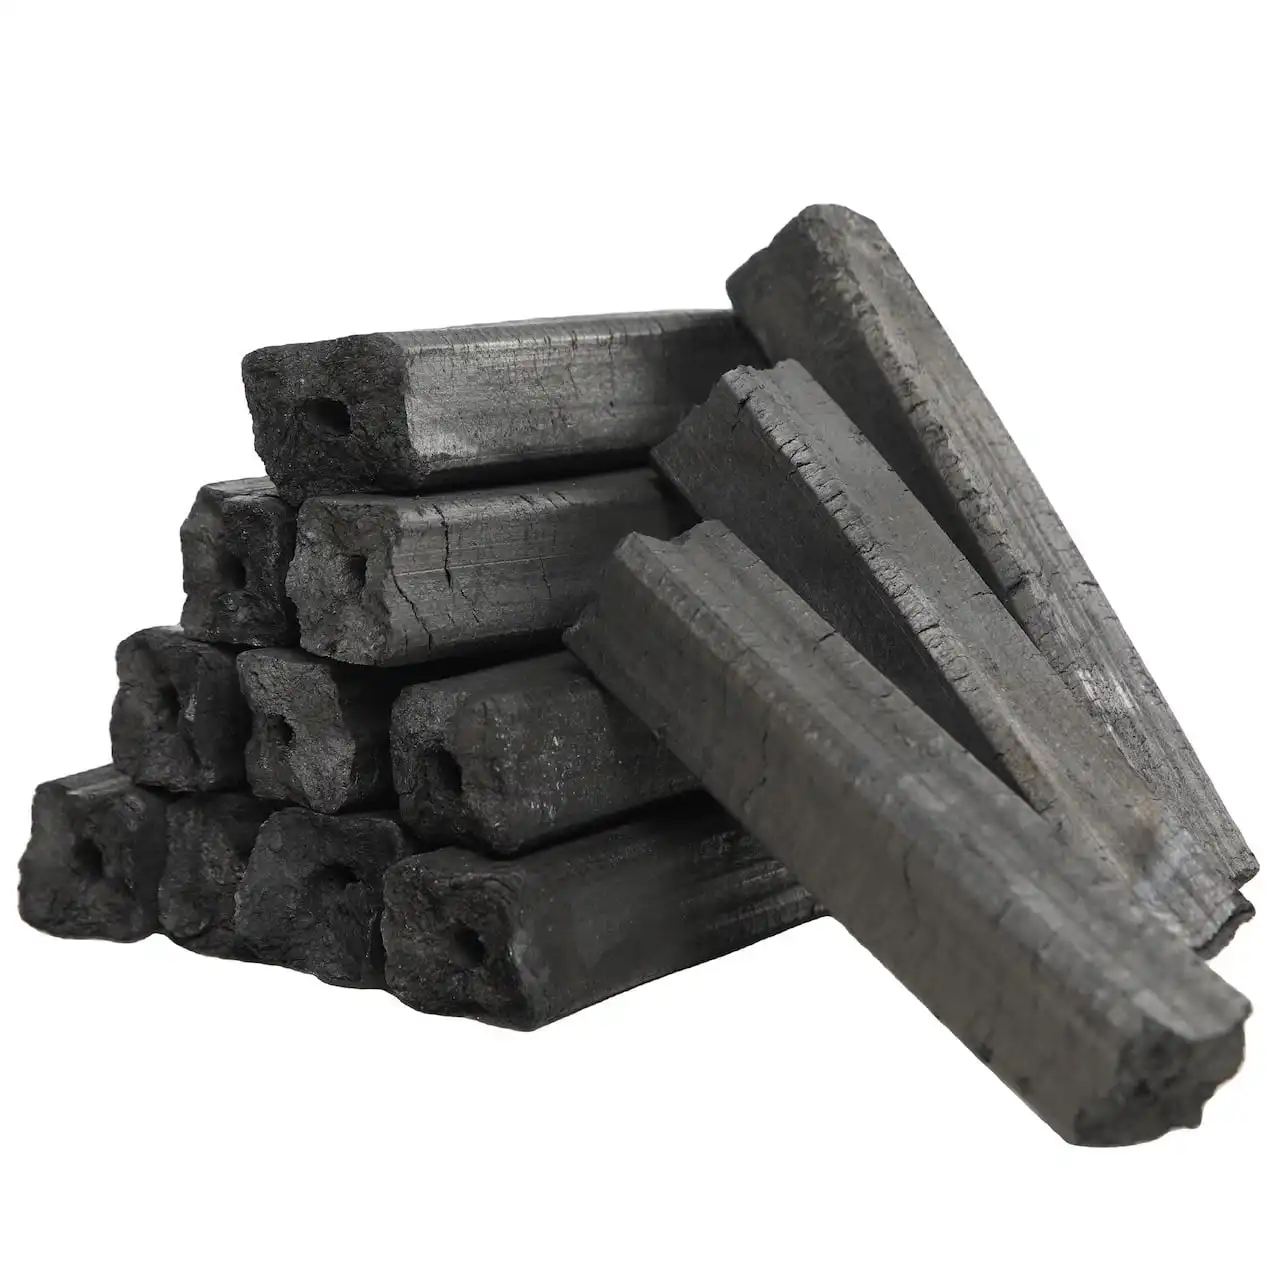 Meilleur vendeur-Vente en gros de charbon de sciure de bois-Briquette de sciure de bois Charbon de bois/exportation de briquettes de charbon de bois bbq dans le monde entier